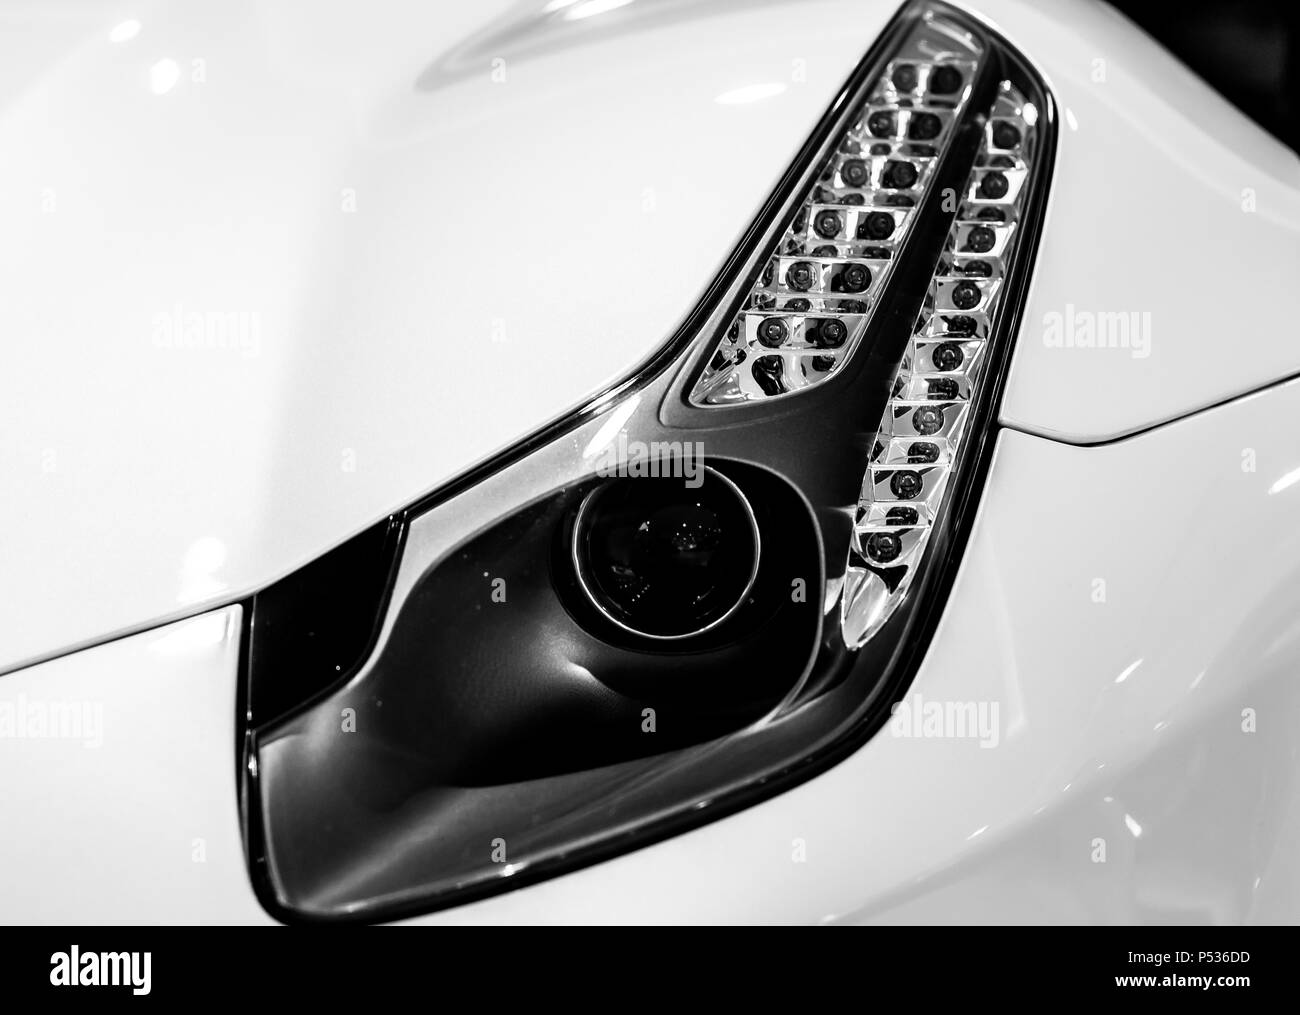 Le phare d'une voiture super FF Ferrari moderne Banque D'Images